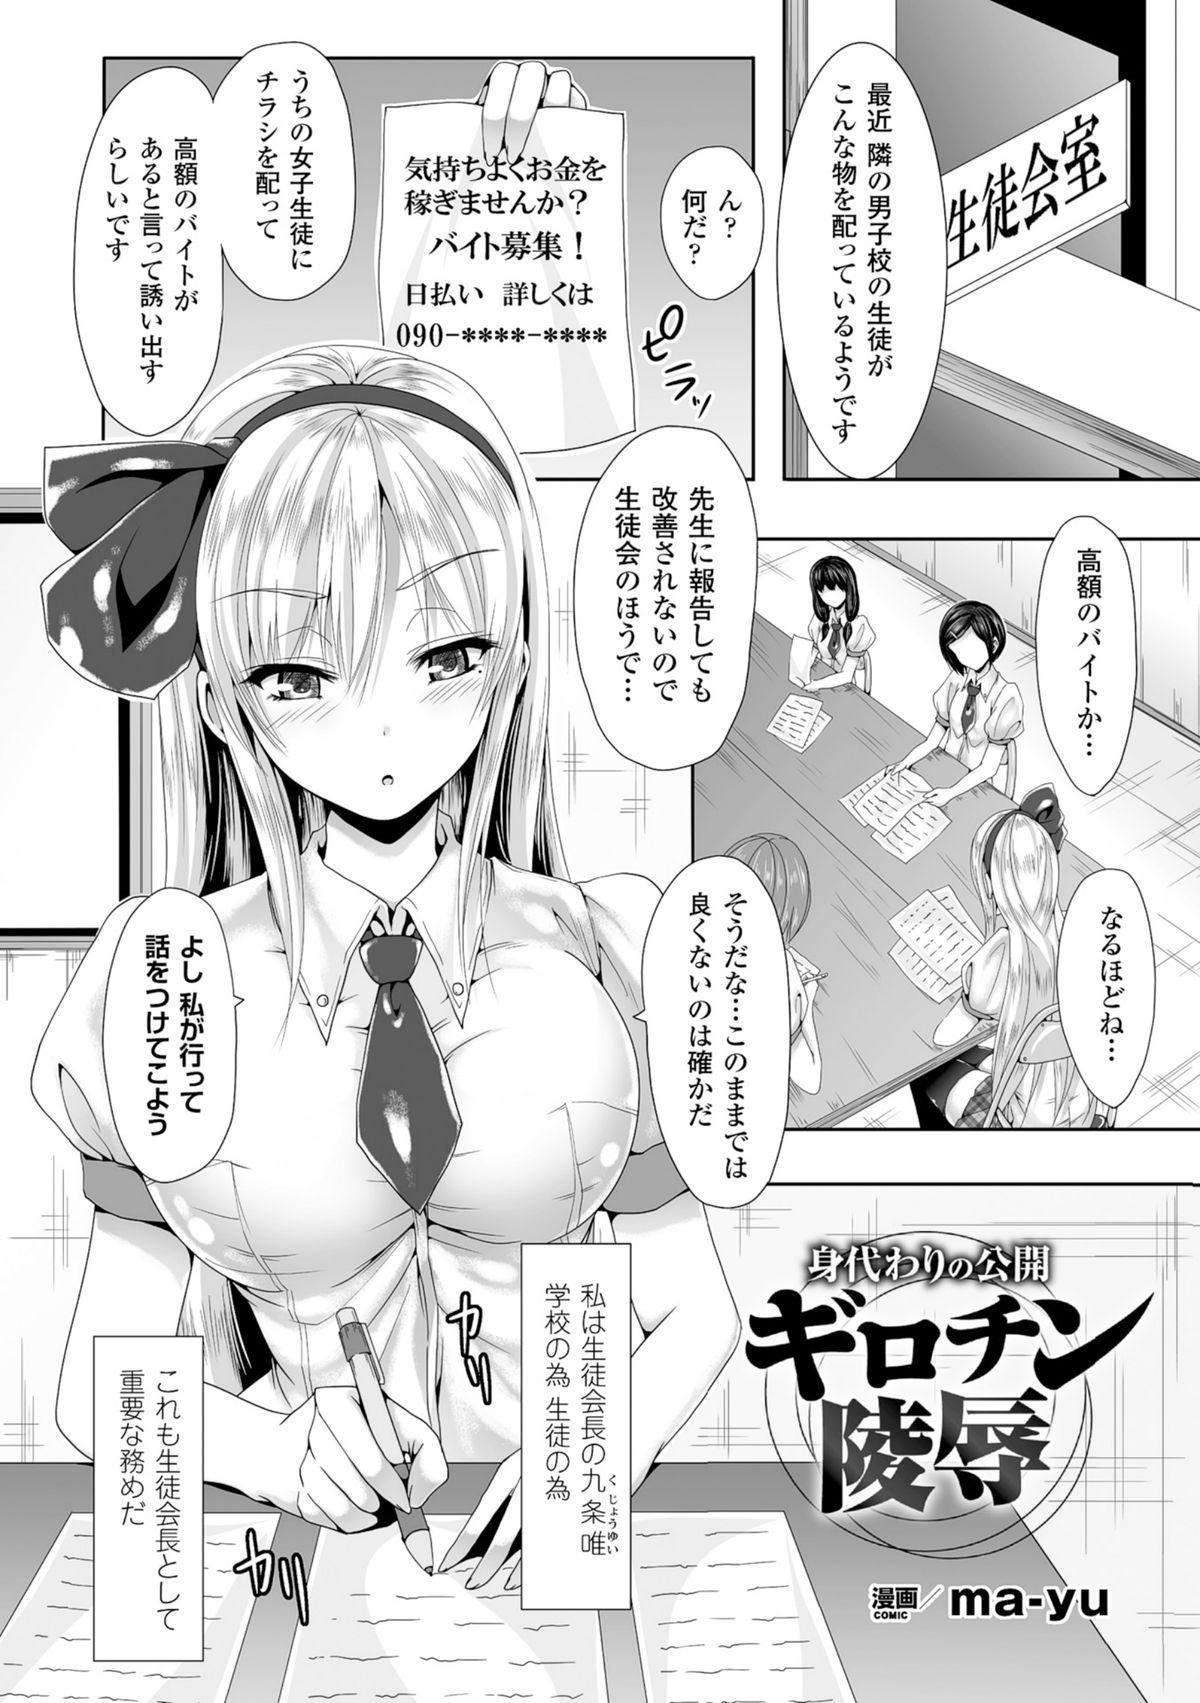 2D Comic Magazine - Guillotine Kousoku de Gouin Sex Shokei! Vol. 2 24